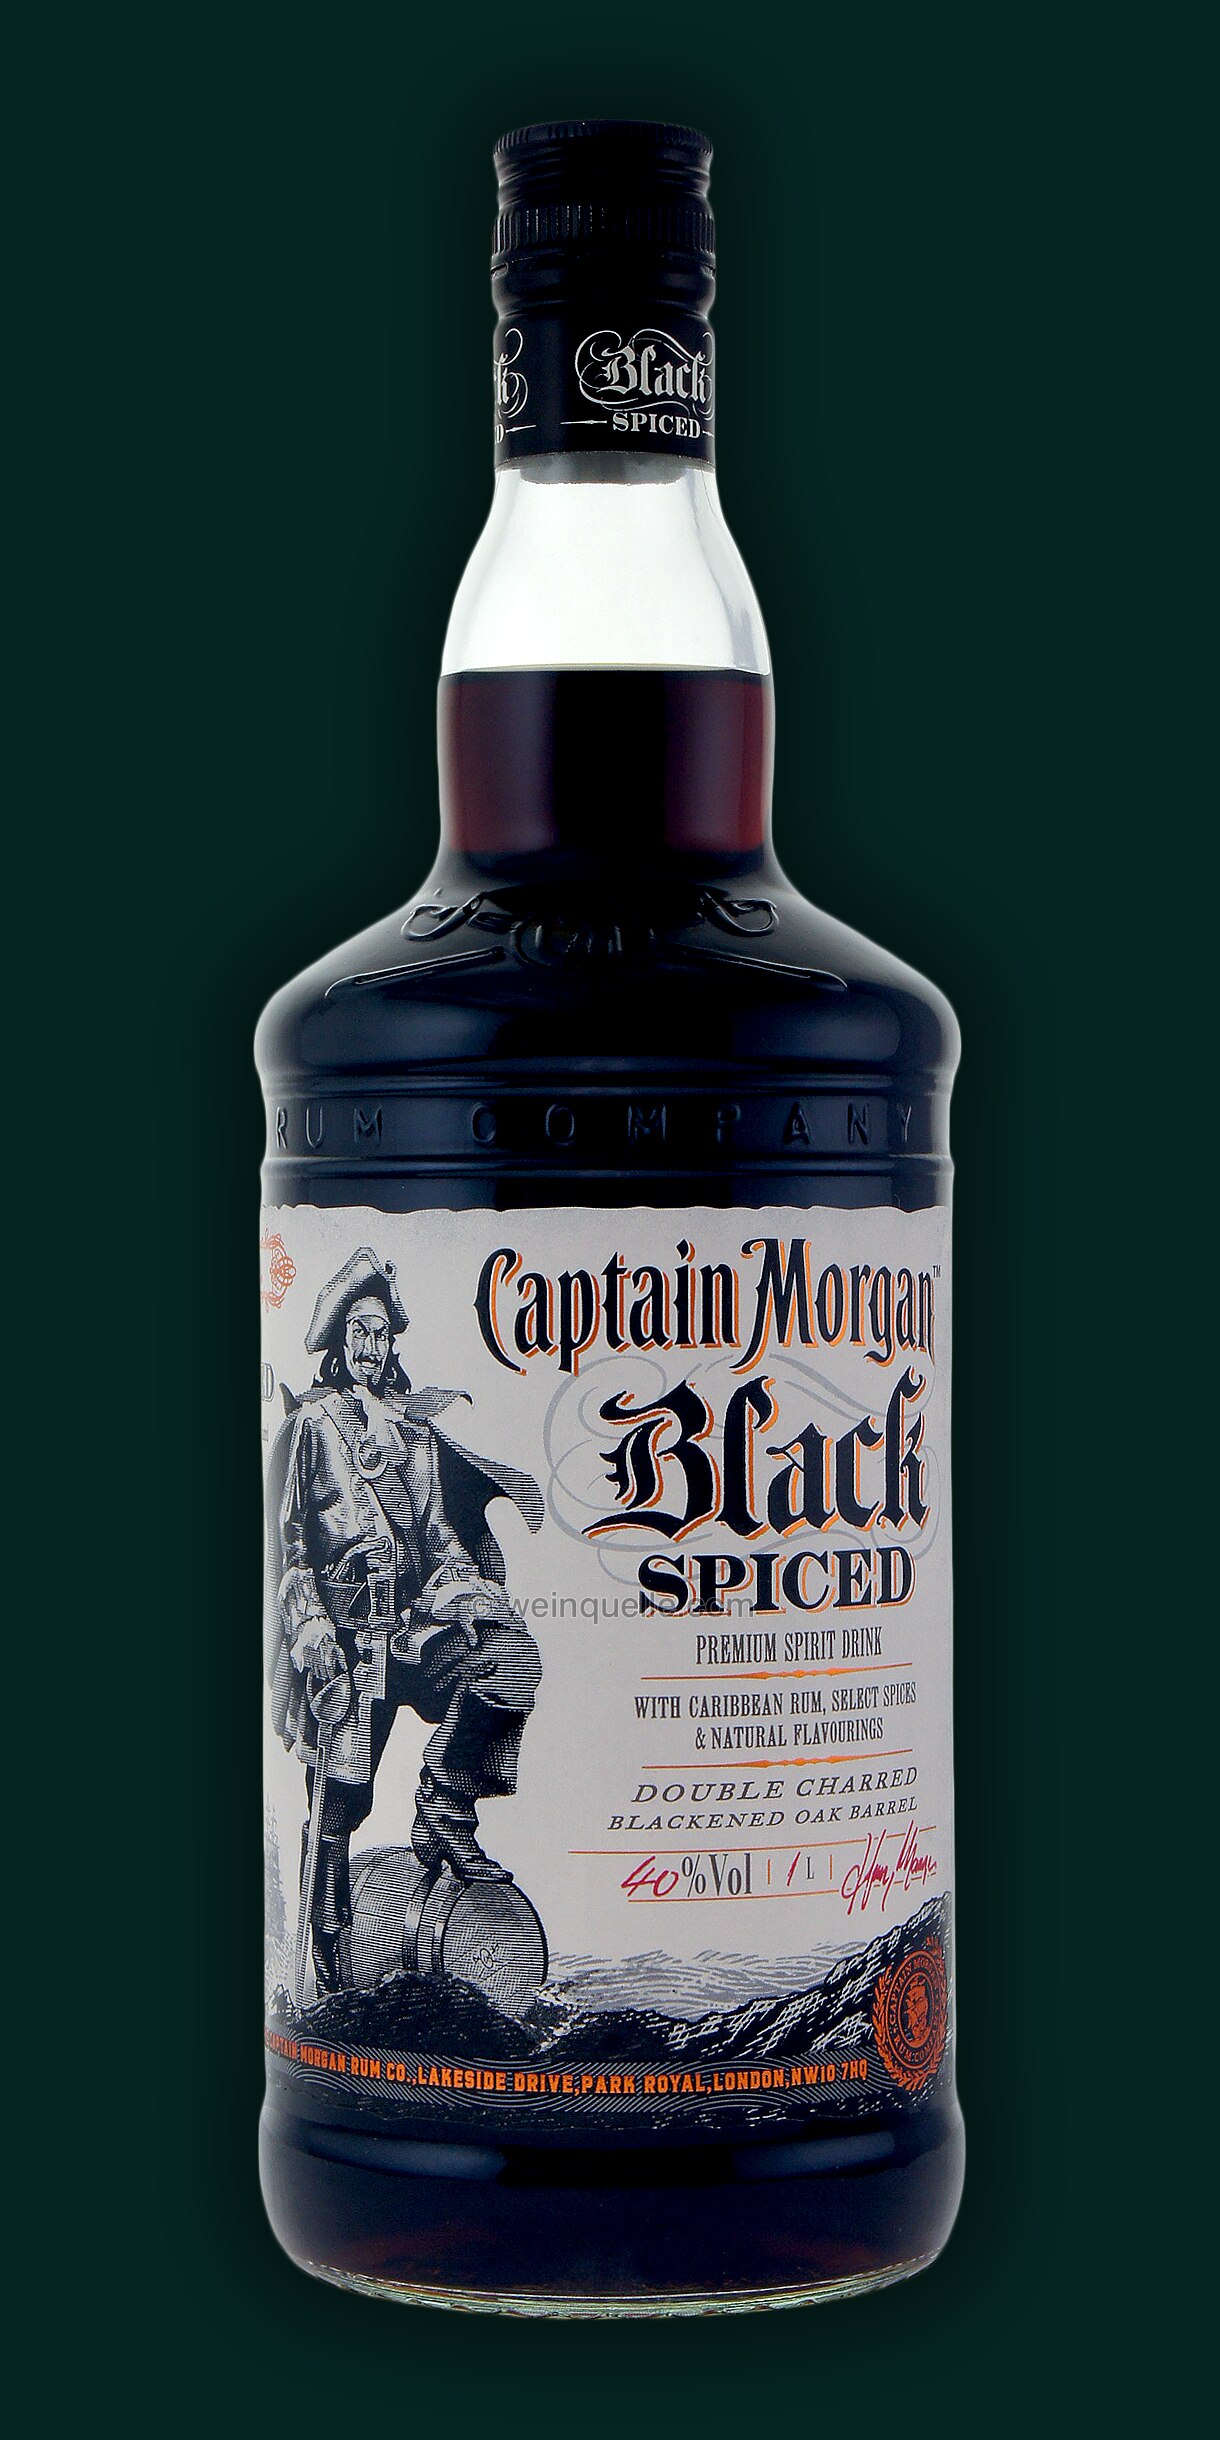 Captain Morgan Weinquelle € - Spiced 21,50 Lühmann Liter, 1,0 Black